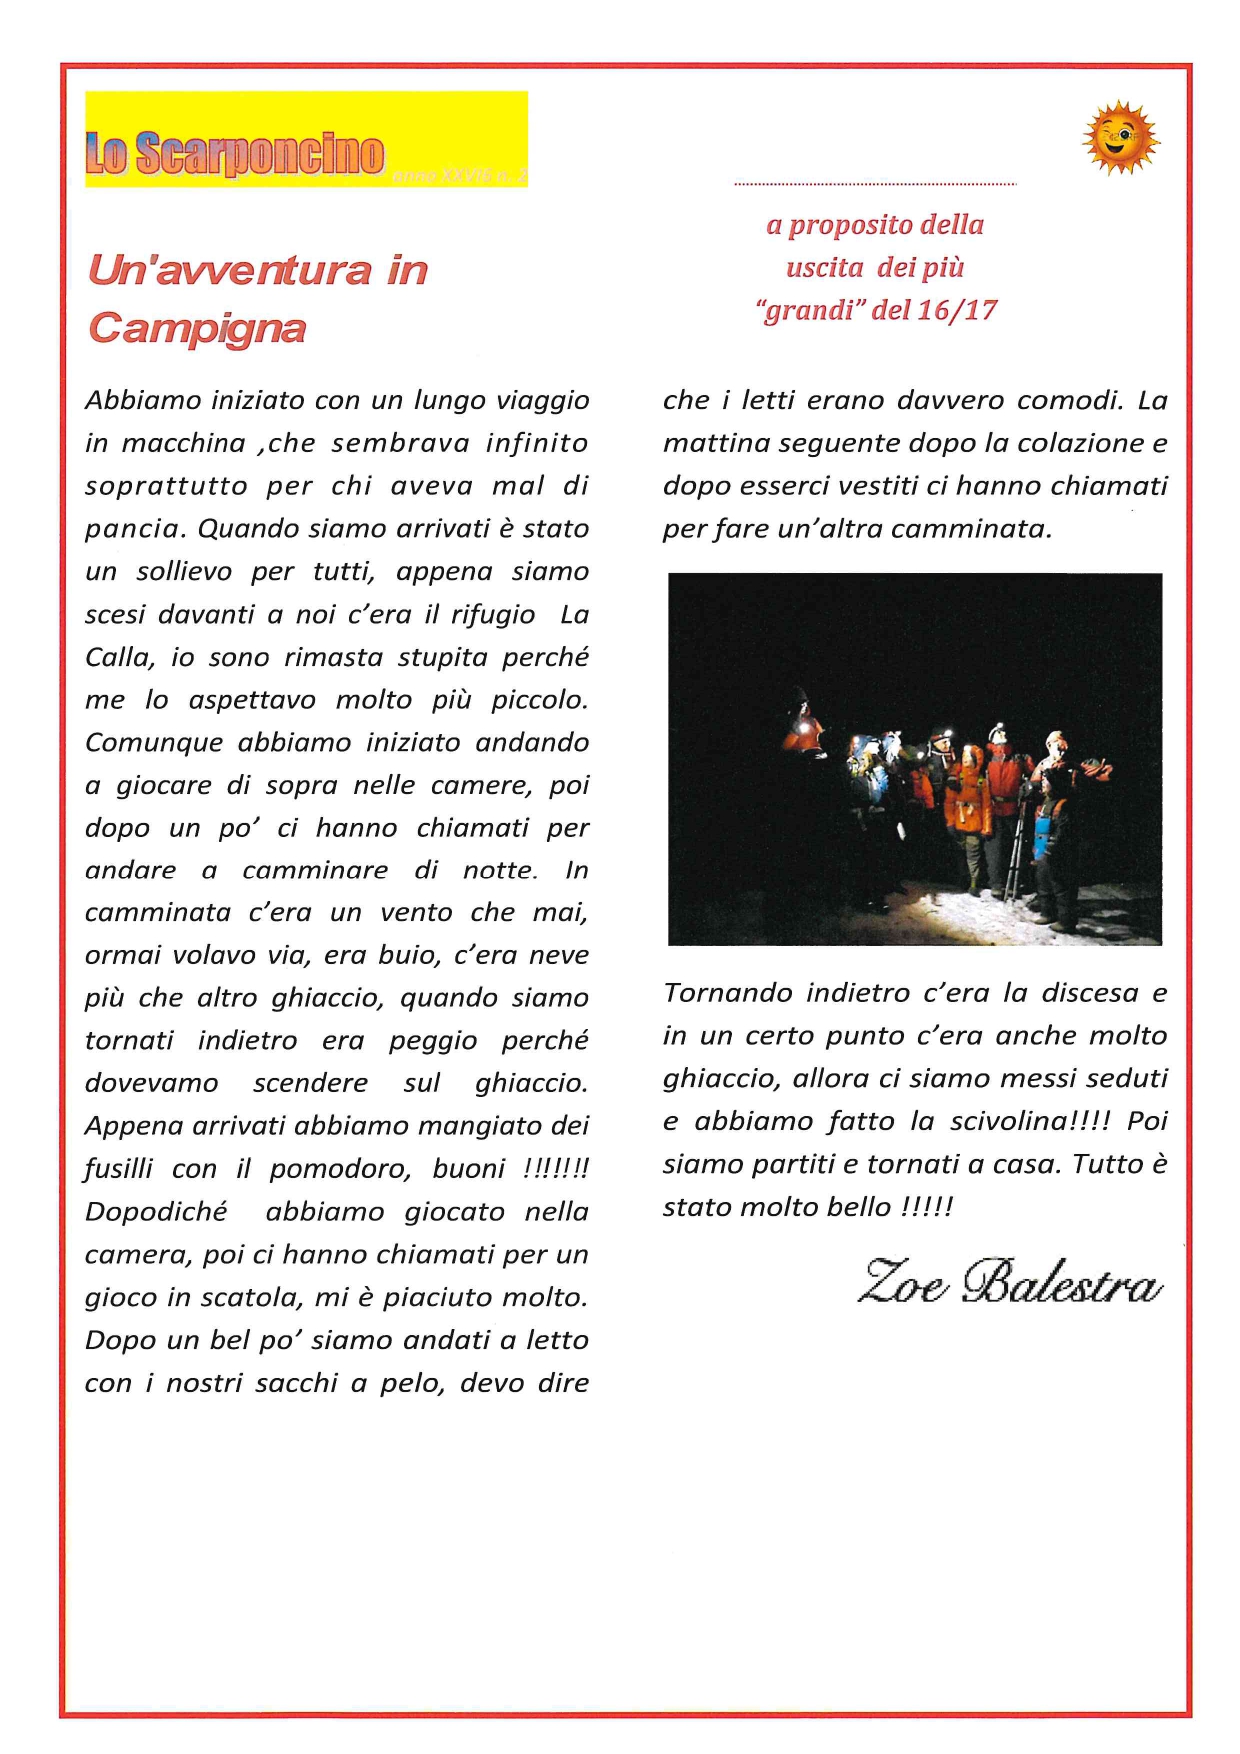 1 Un'avventura in Campigna   16 febbraio 2019 page 0001